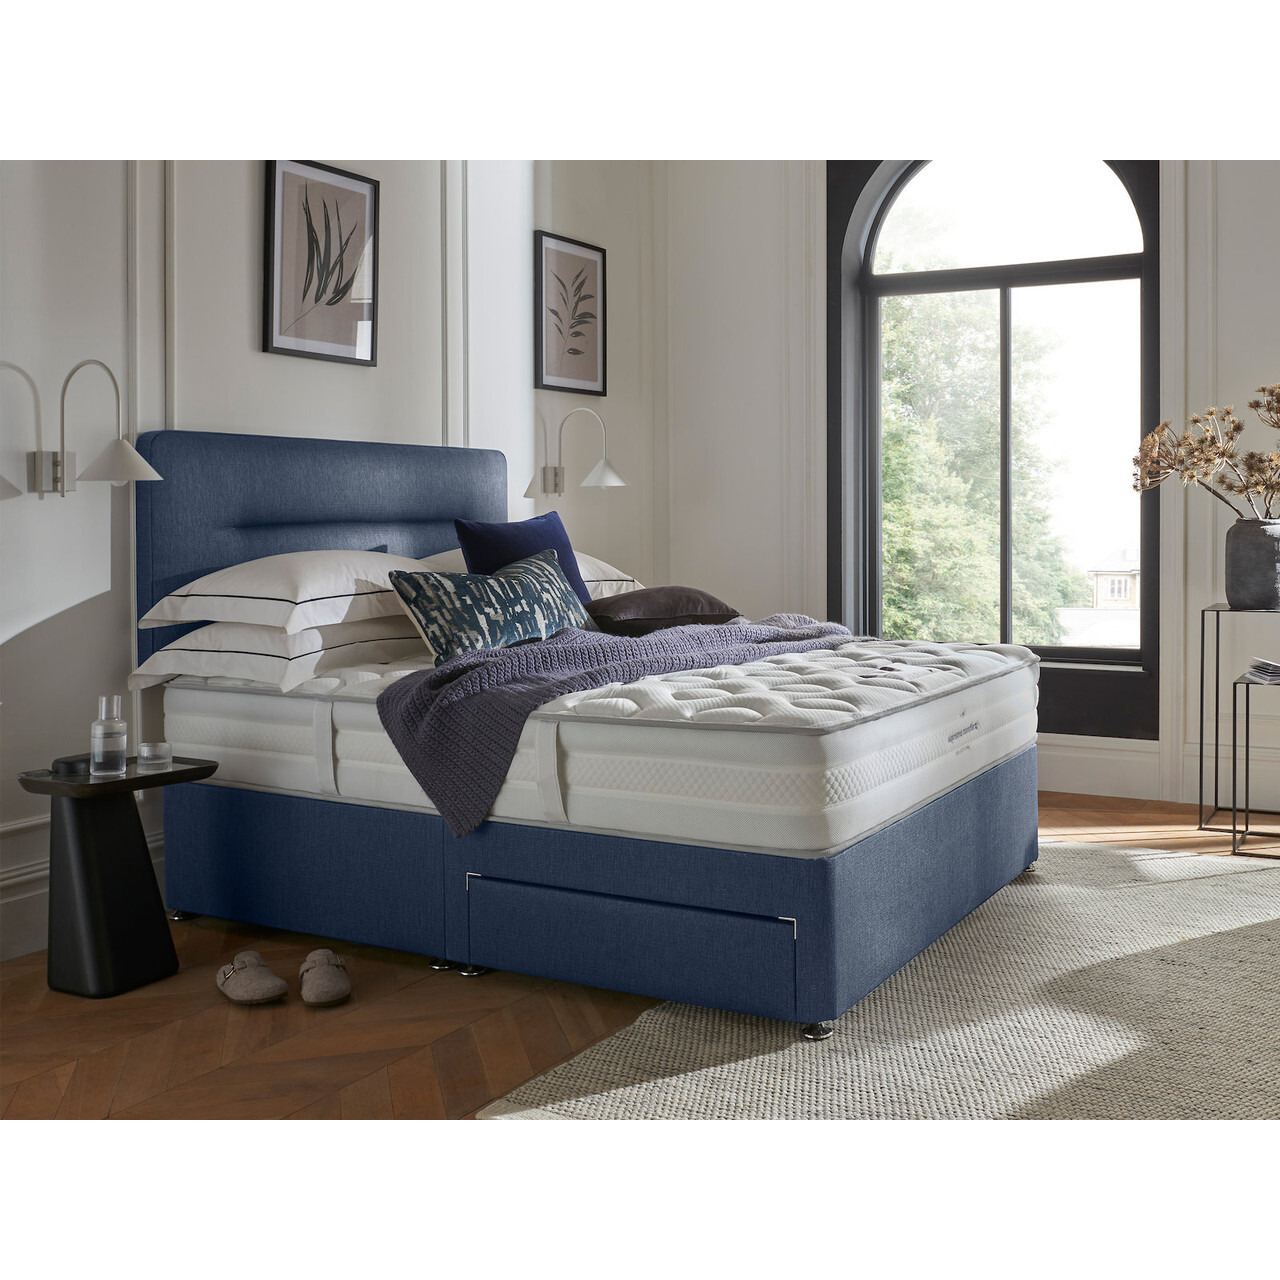 Silentnight 1400 Eco Dual Supreme Comfort Divan Bed Set - image 1